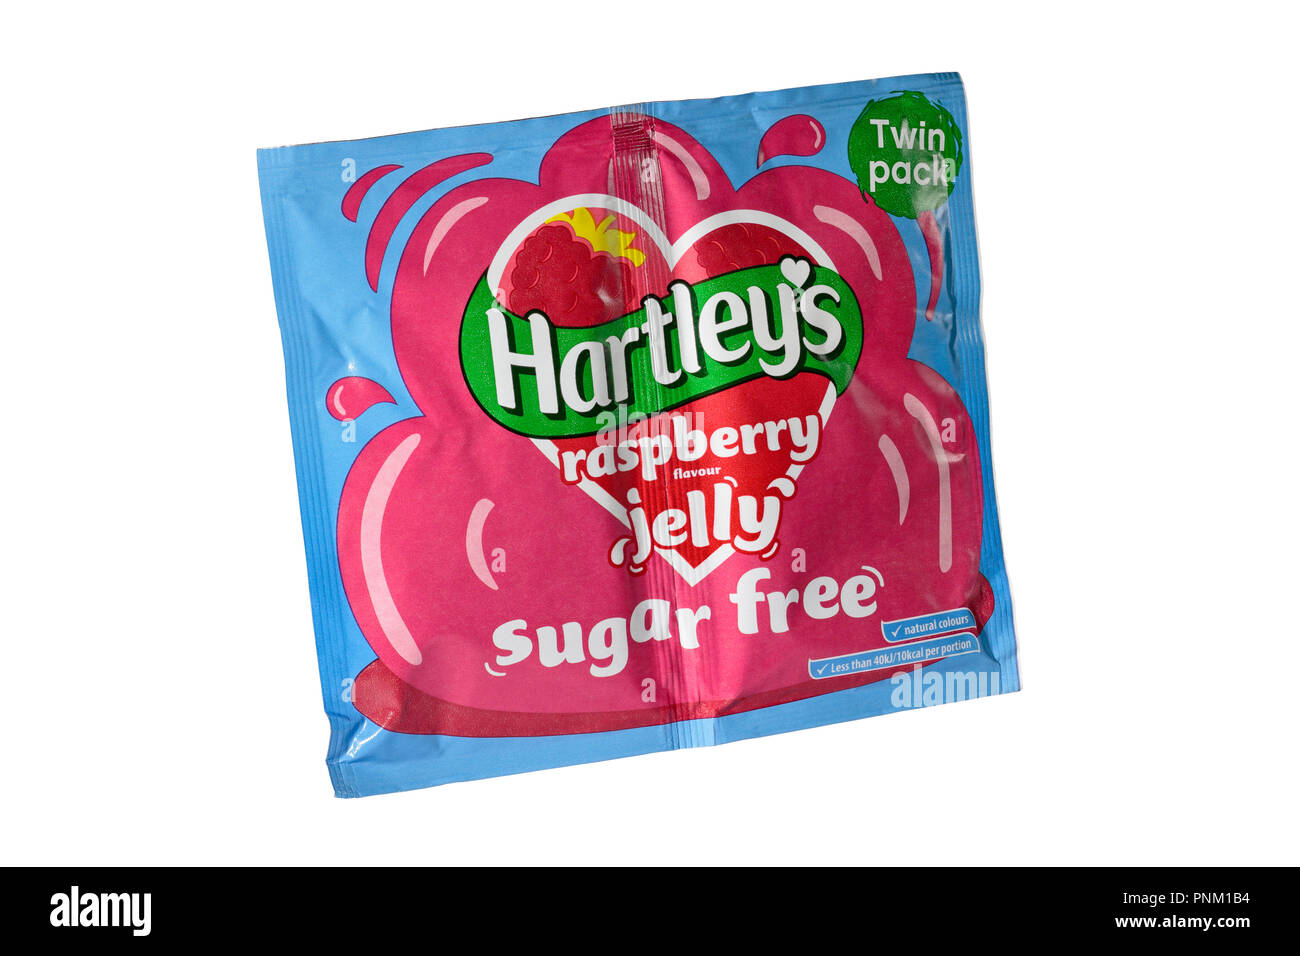 Un paquete de dos bolsitas de Hartley's sugar free gelatina de frambuesa aislado sobre un fondo blanco. Foto de stock